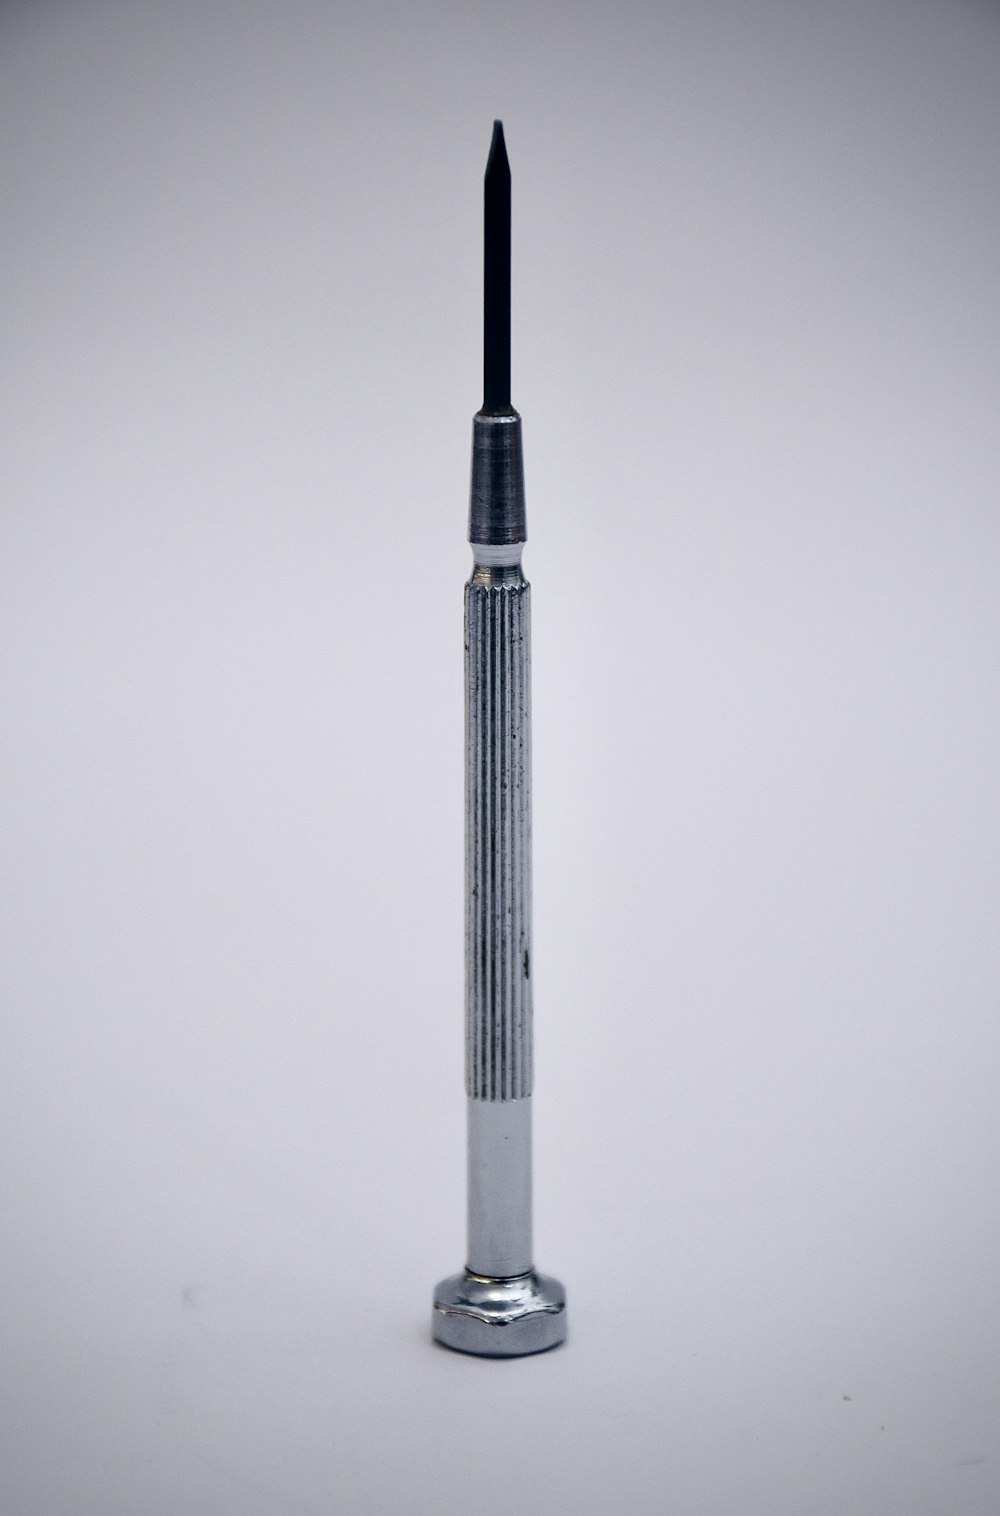 spazzolino elettrico in bianco e nero